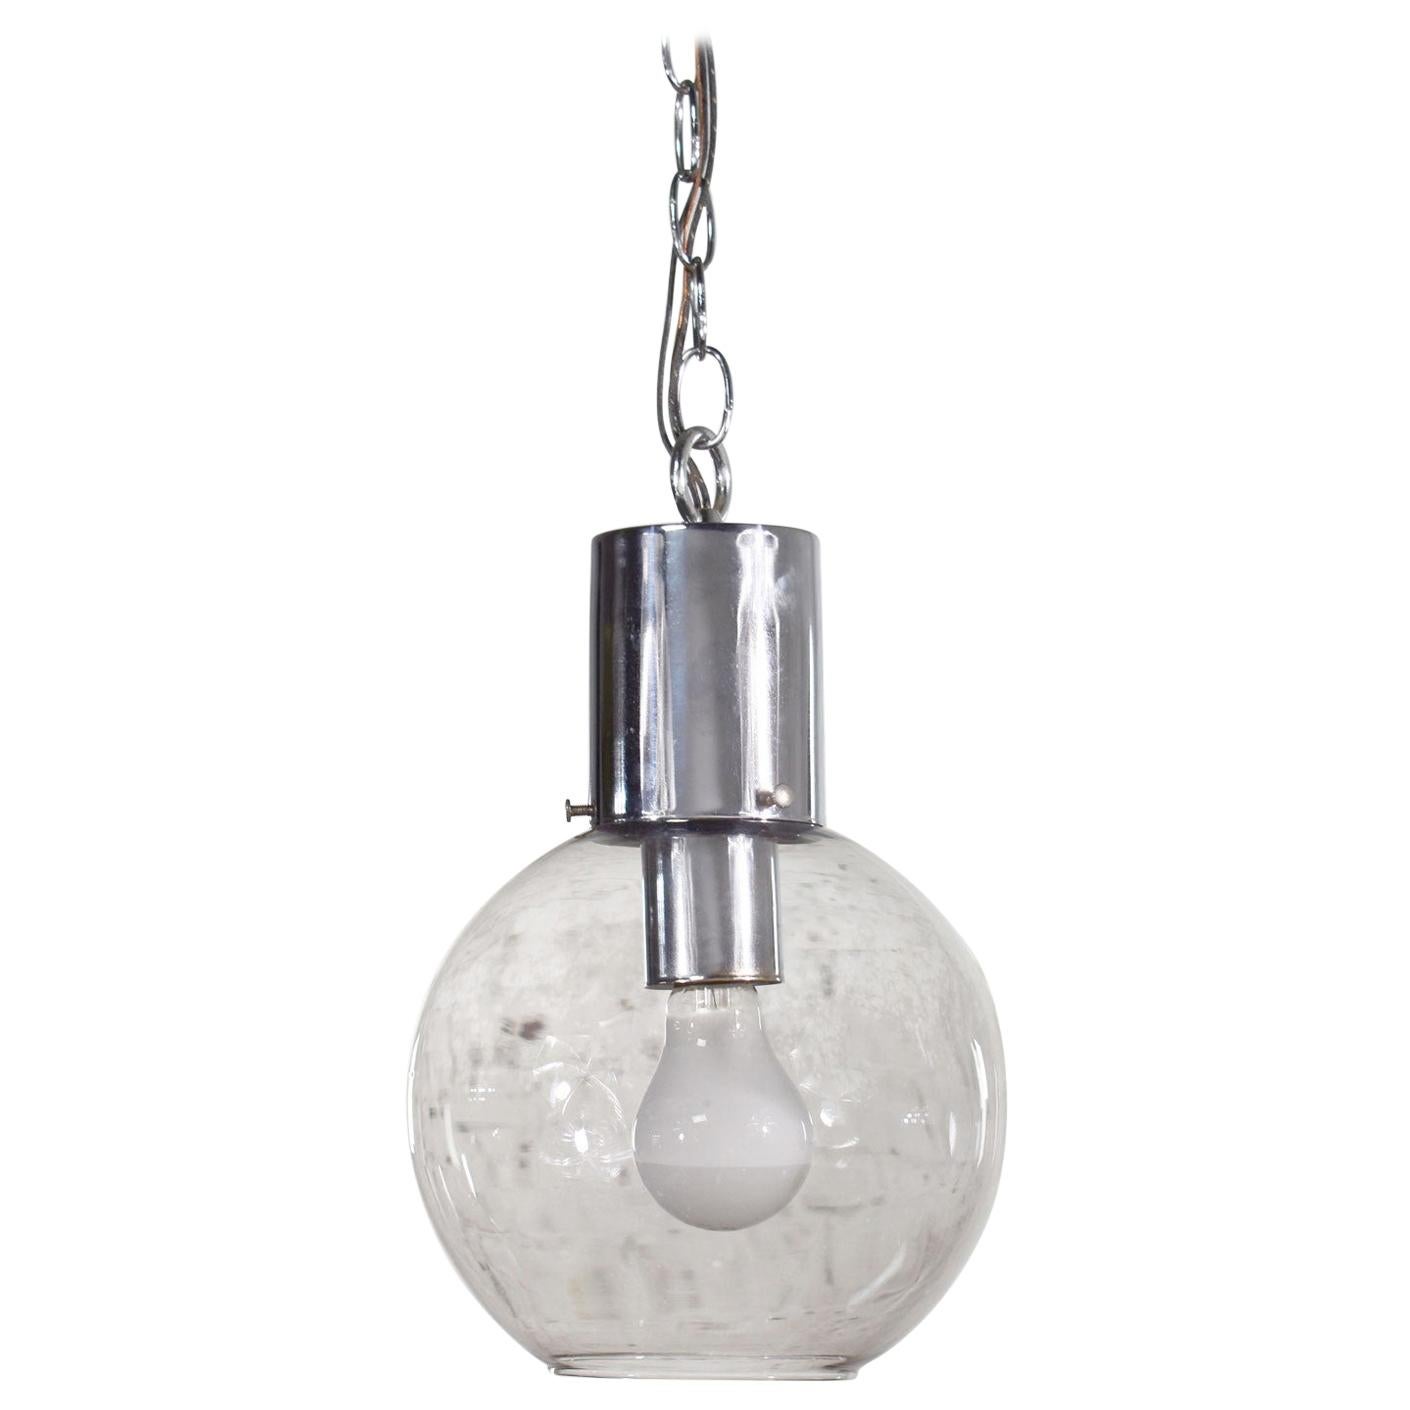 Lampe à suspension moderne mi-siècle en chrome et verre fumé avec chaîne chromée en forme de globe